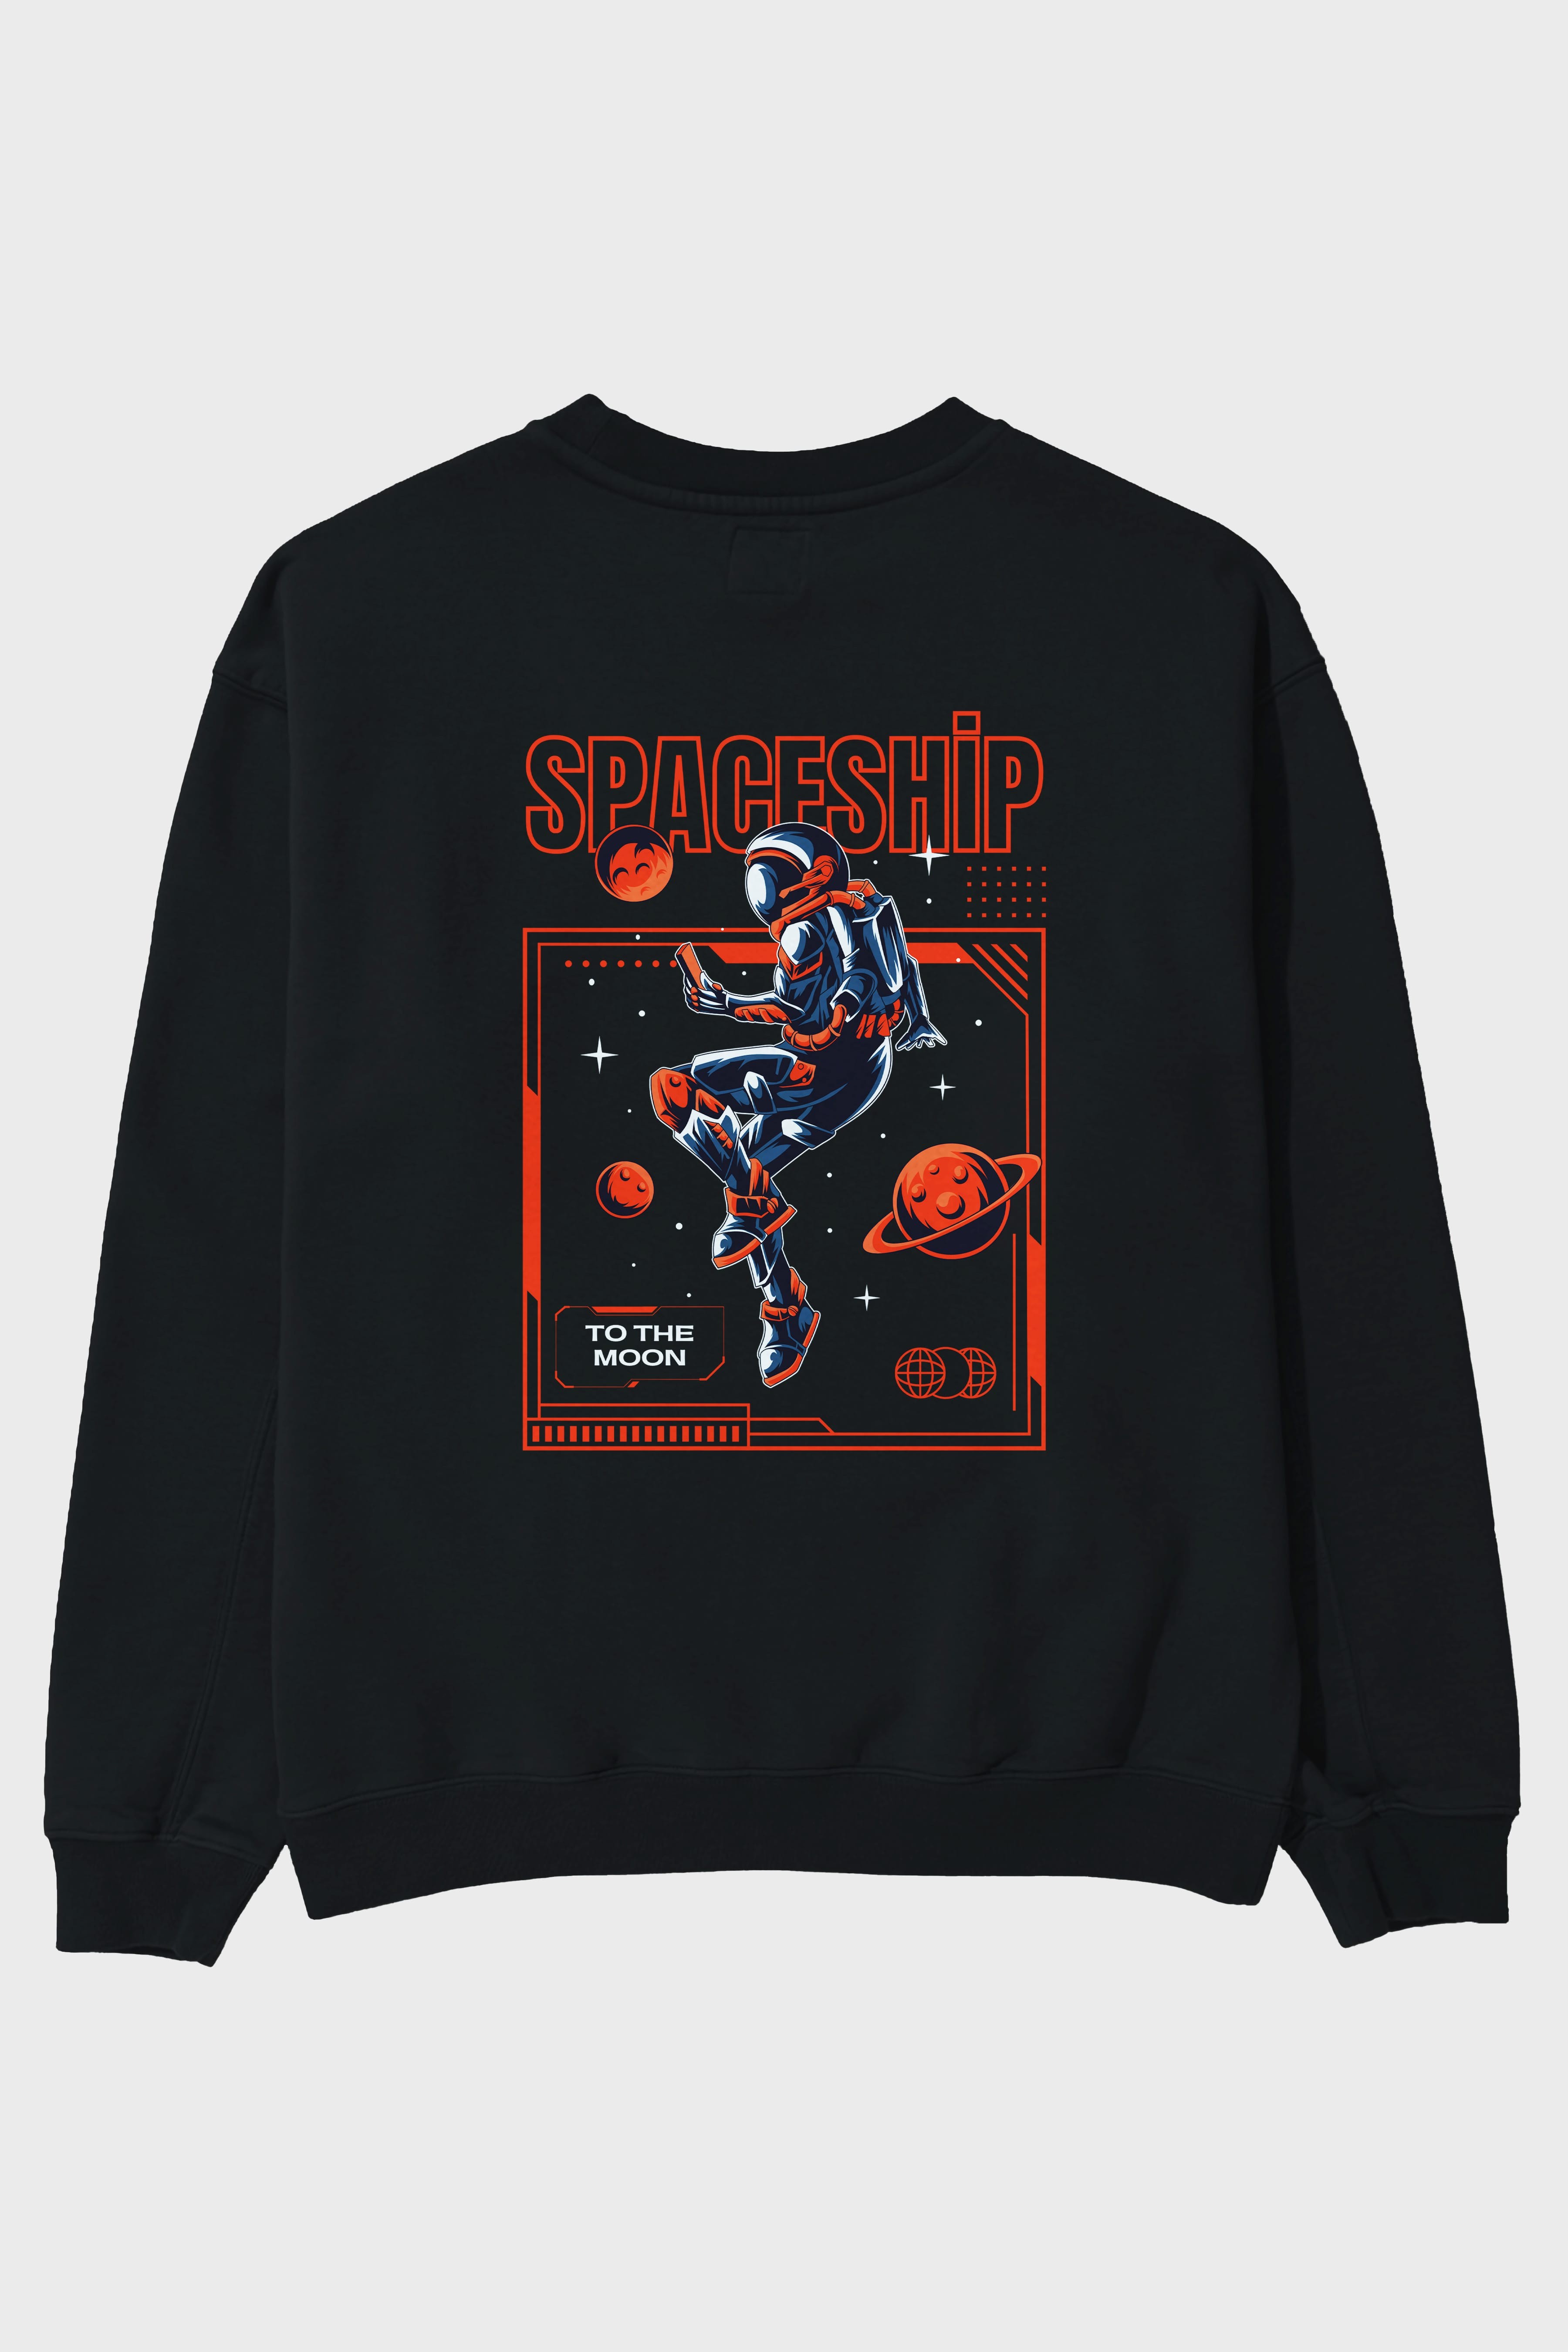 Spaceship Arka Baskılı Oversize Sweatshirt Erkek Kadın Unisex